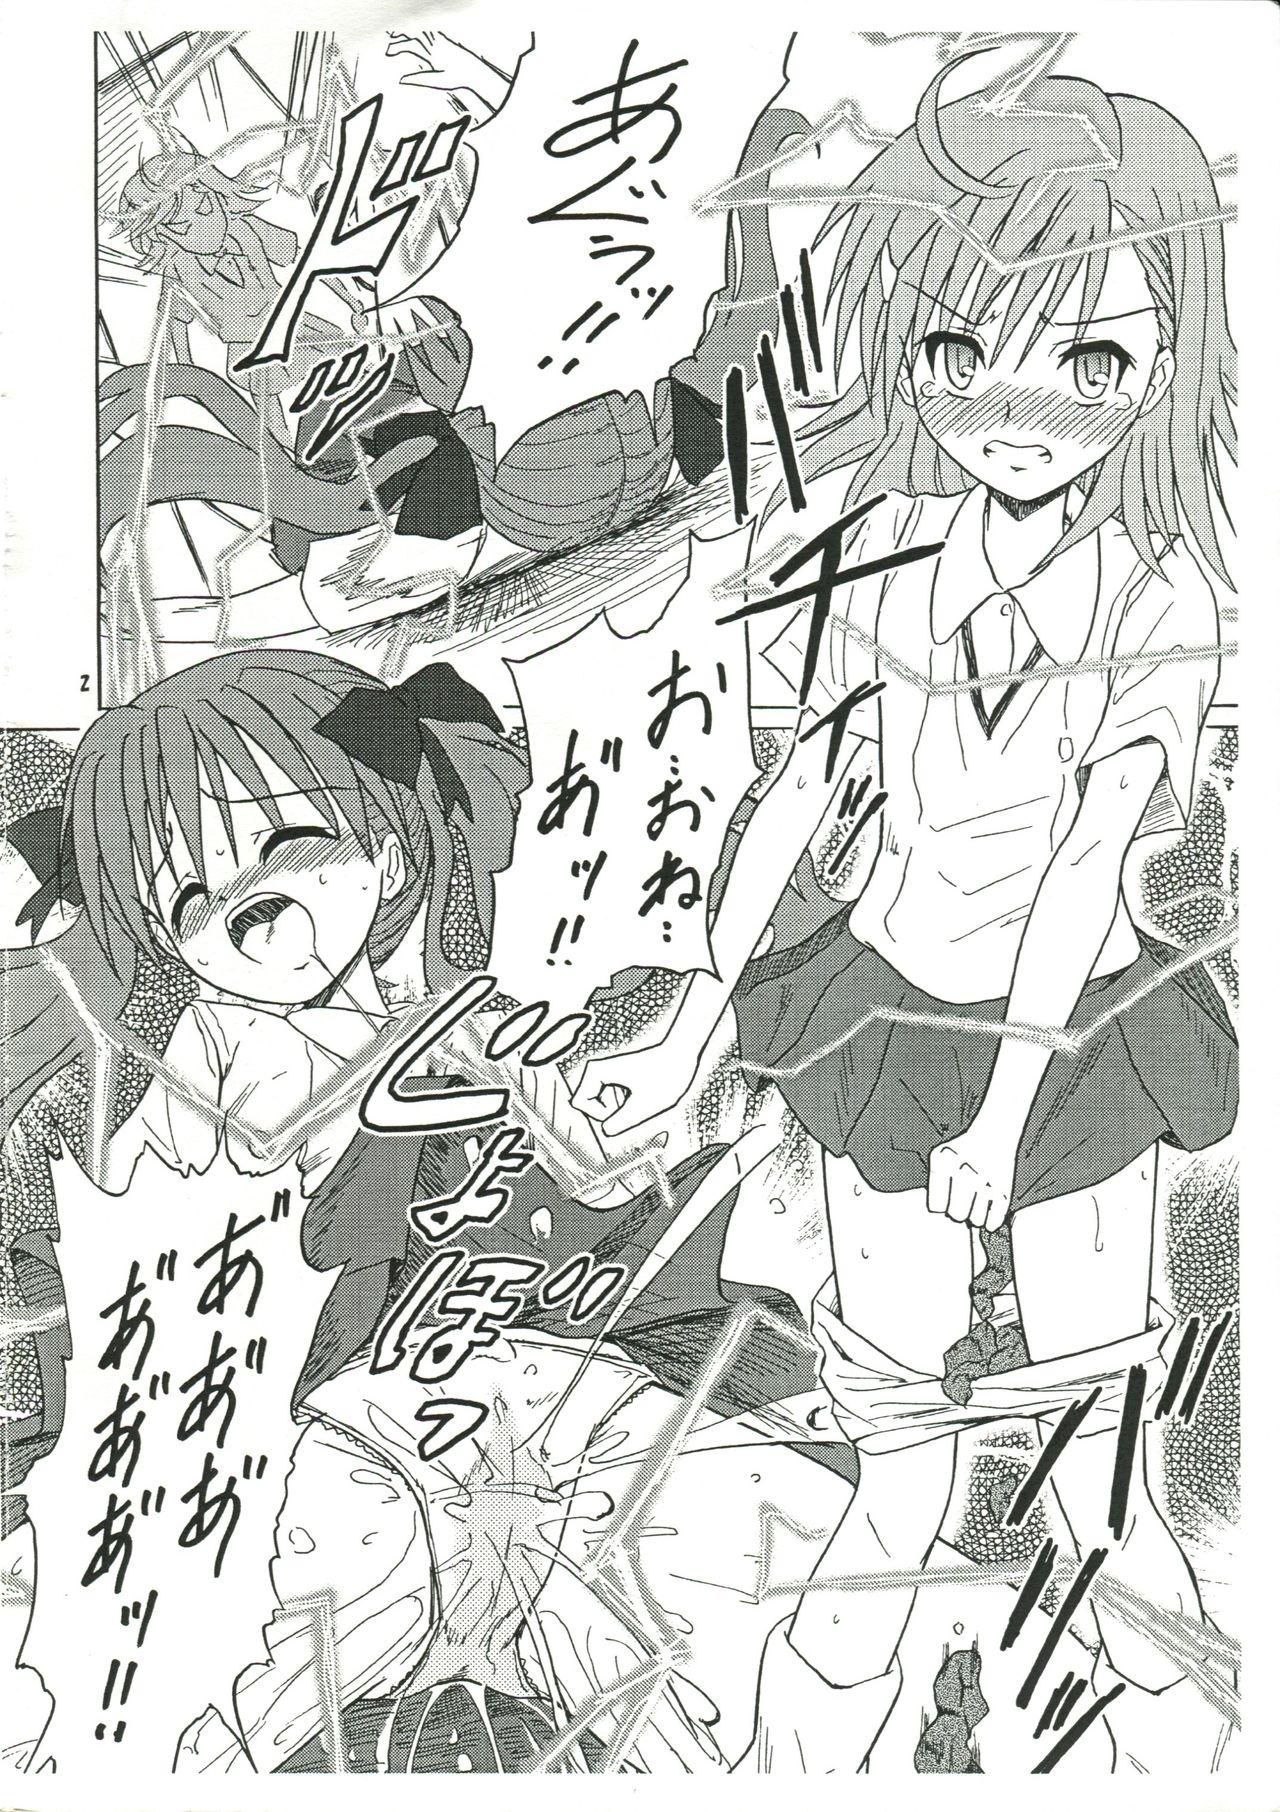 Plumper Chirashi no Ura Vol. 3 - Toaru kagaku no railgun Toaru majutsu no index Van - Page 3